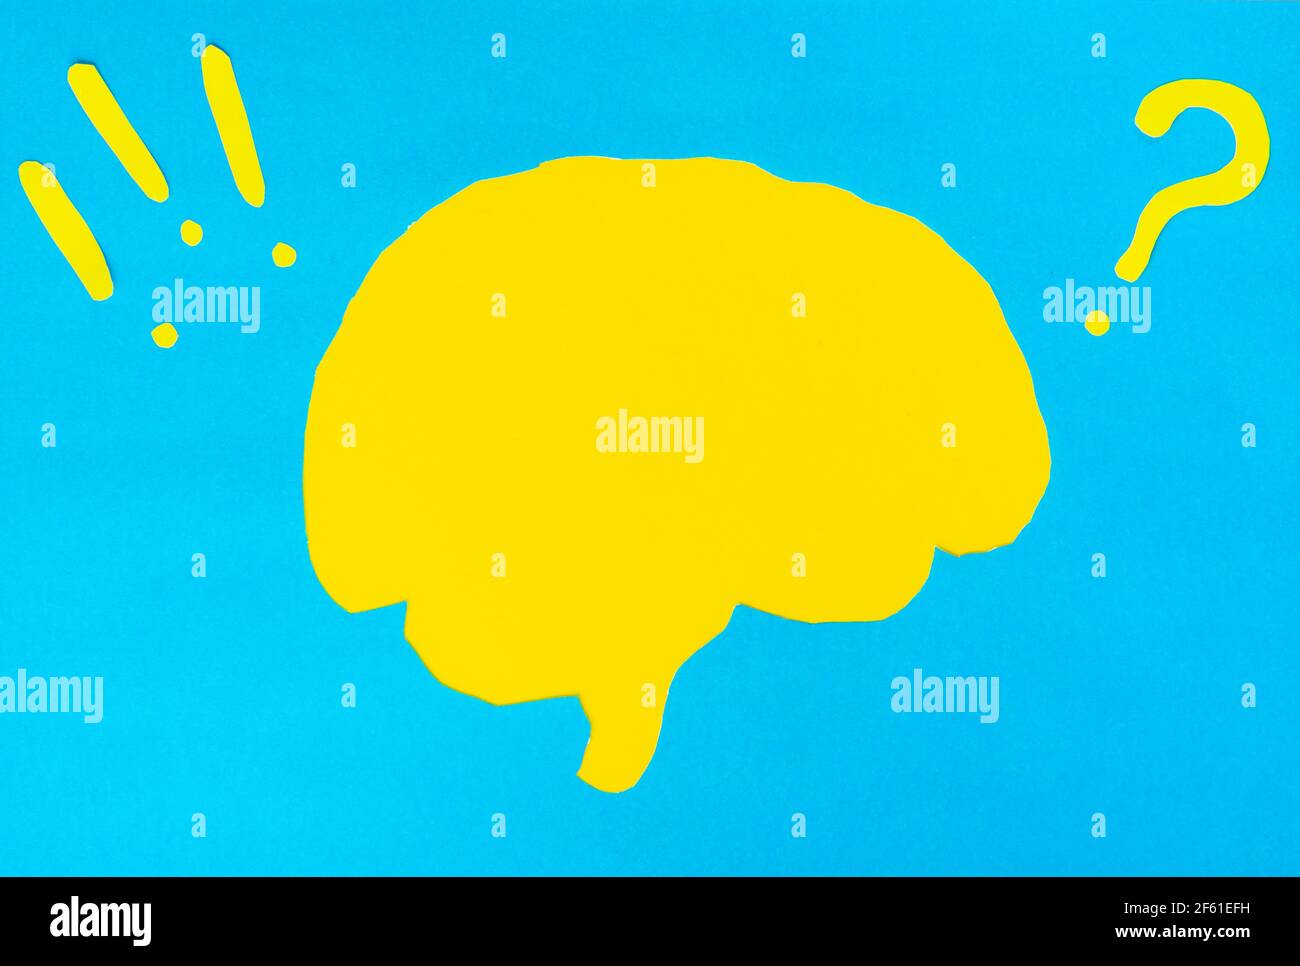 Problemkonzept, gelbes Gehirnlayout mit Frage- und Ausrufezeichen auf blauem Hintergrund Stockfoto